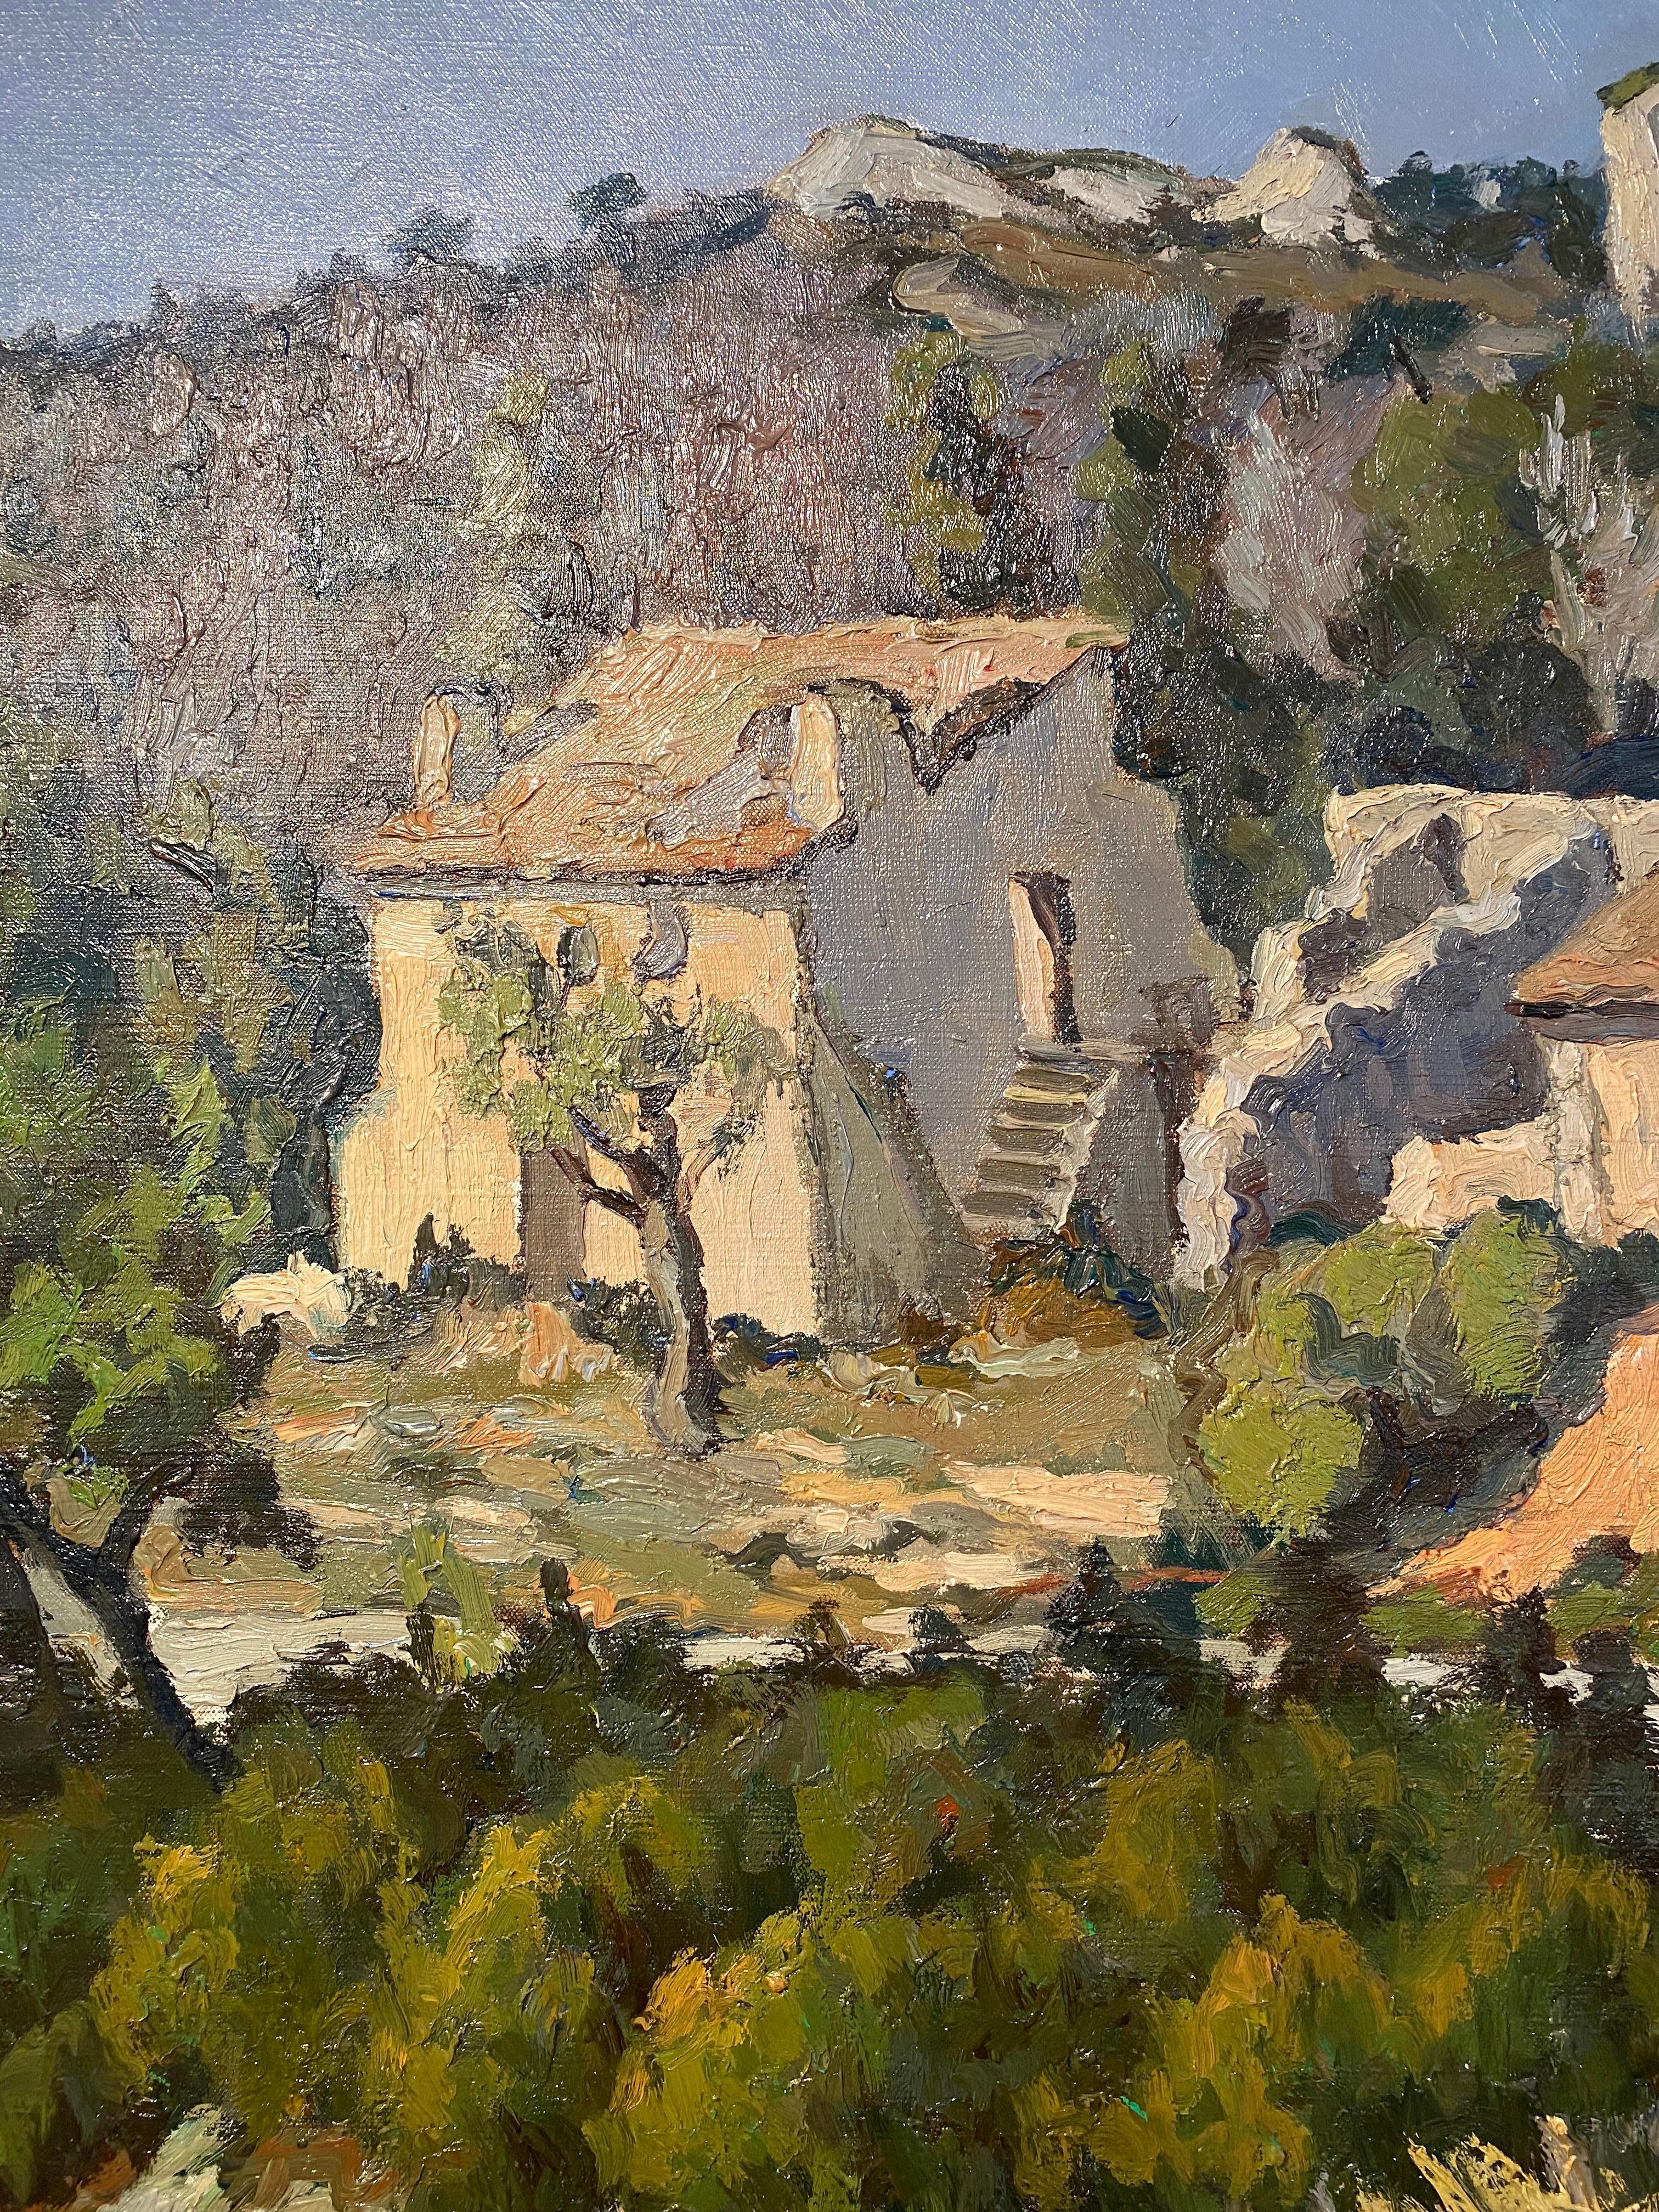 Peinture rurale française Live Groves d'un paysage d'arbres, de chalet et de verdure  - Marron Landscape Painting par Emile Mangenot